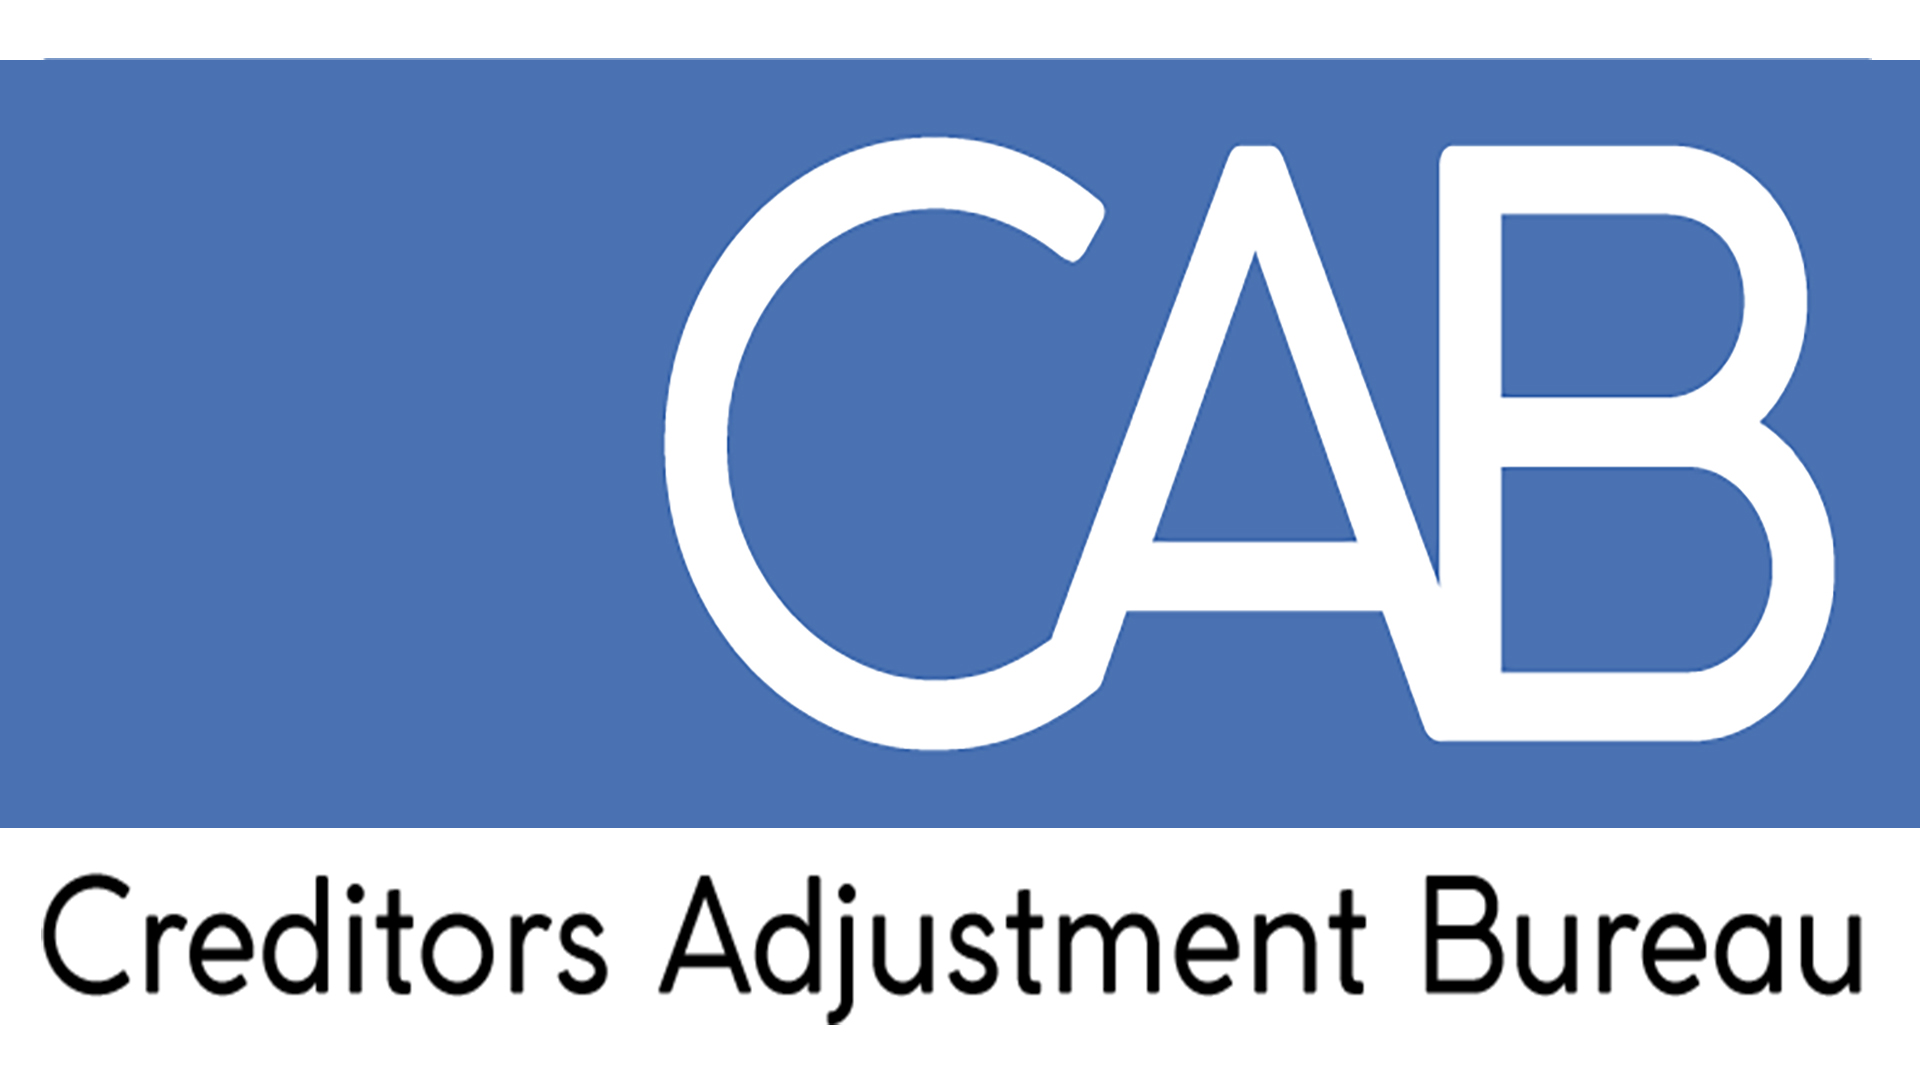 Creditors Adjustment Bureau